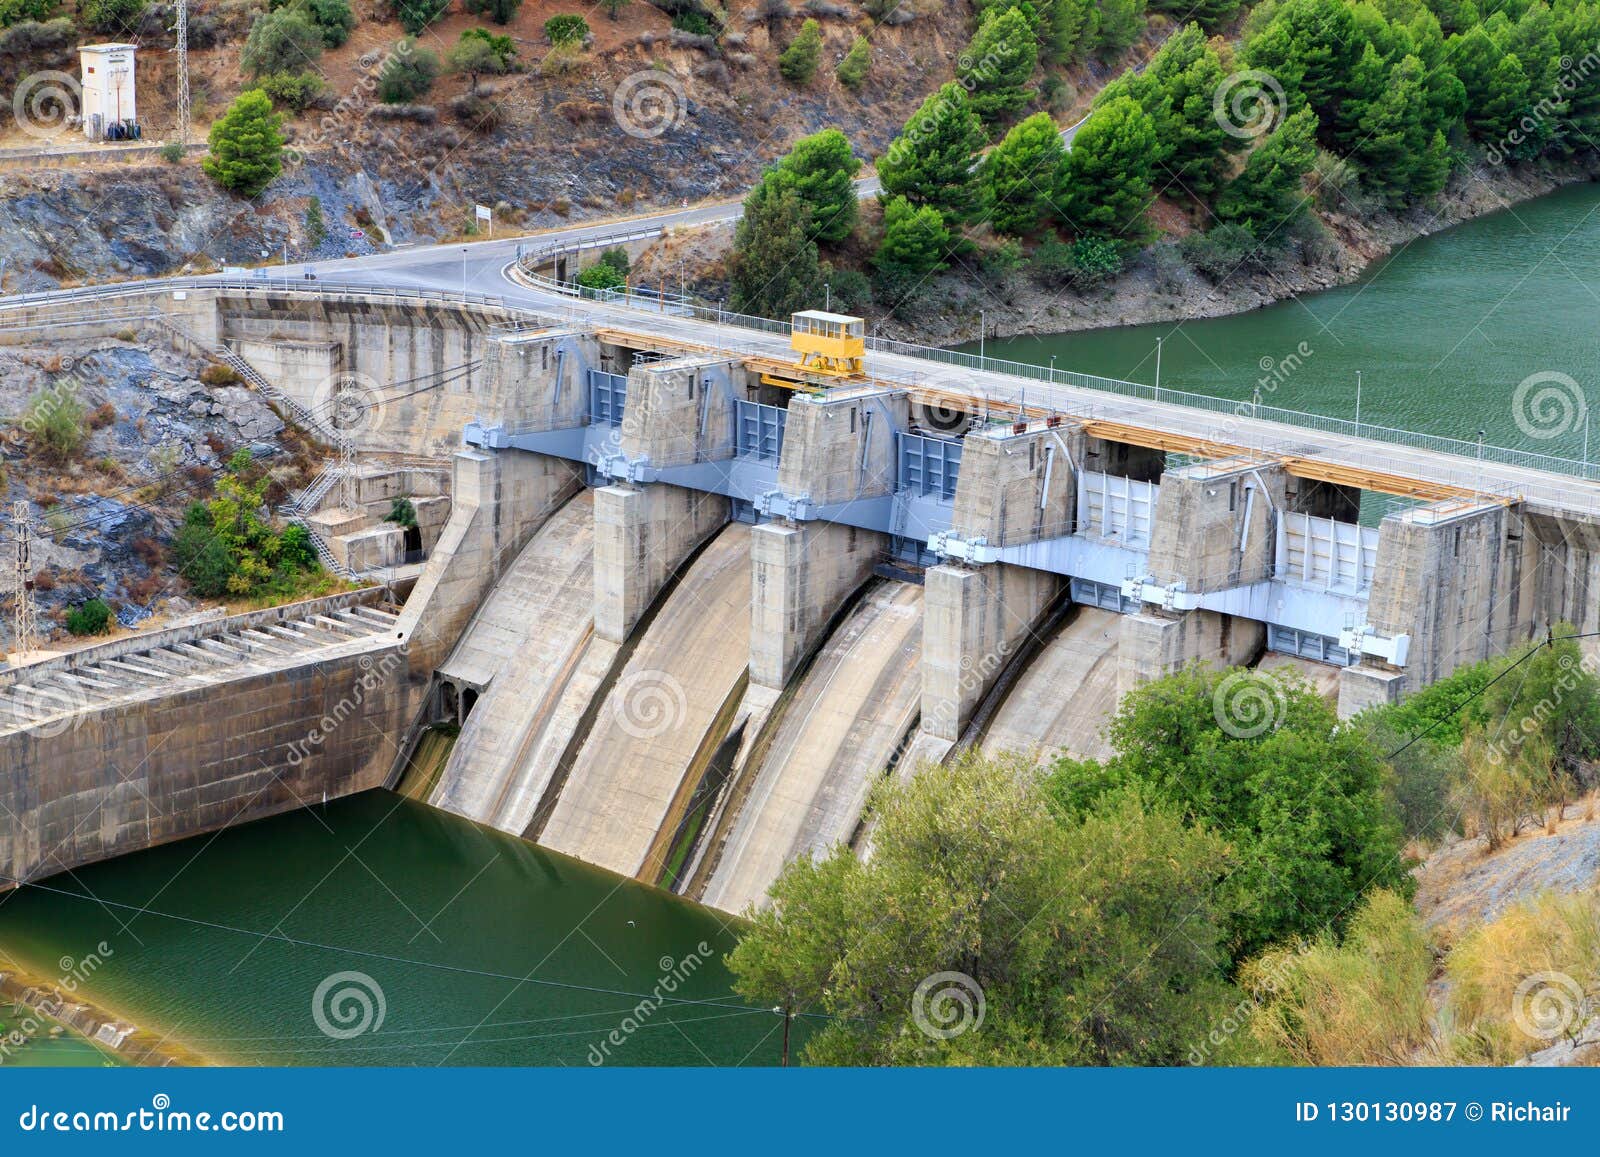 small hydro-electric dam